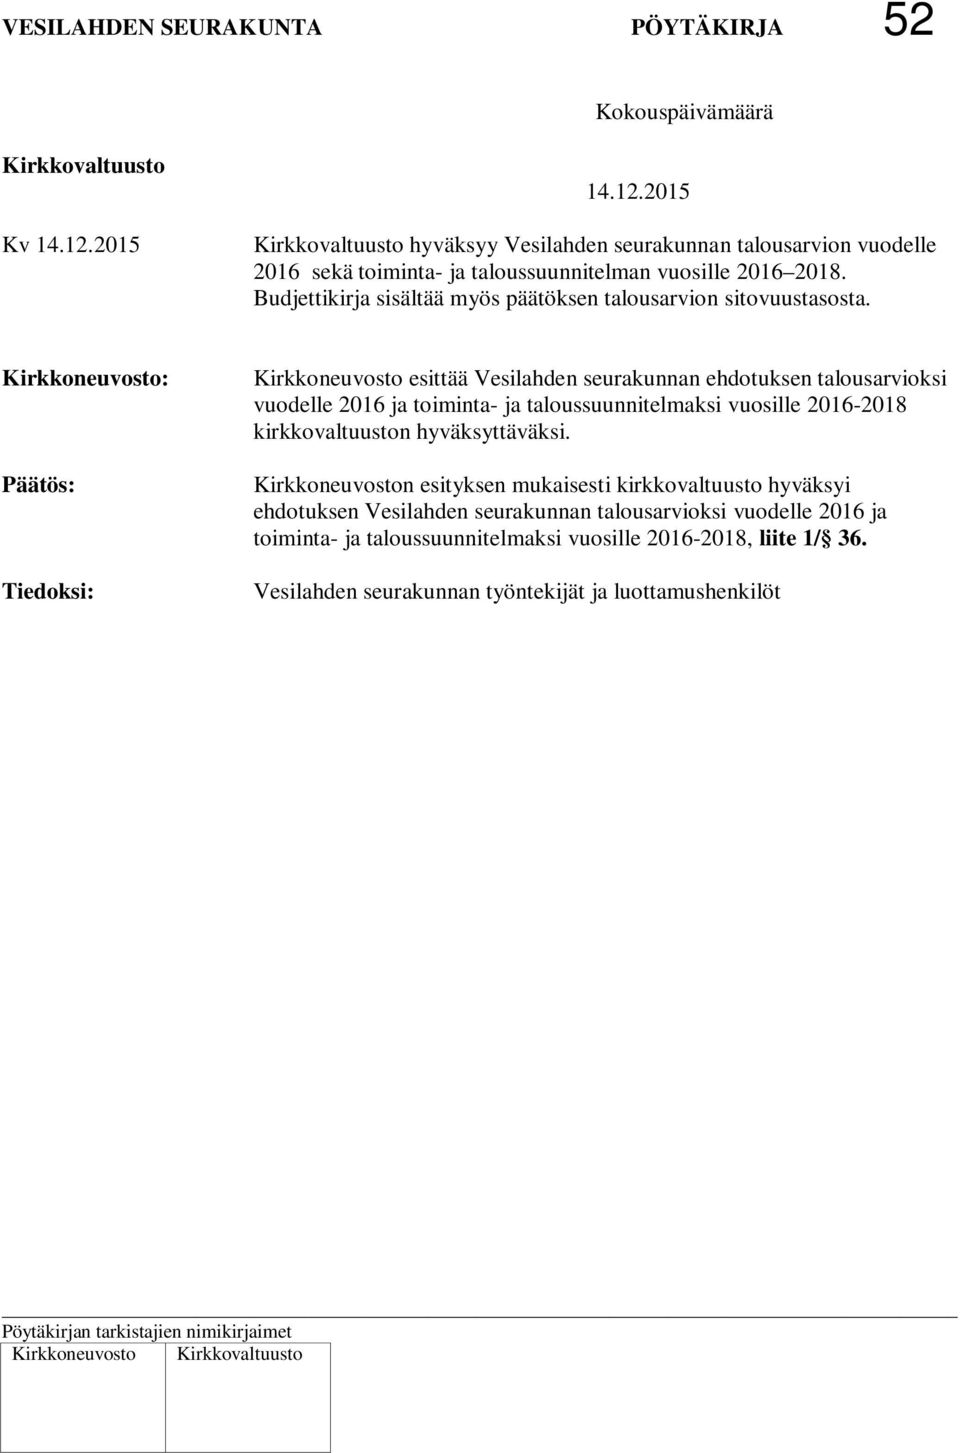 Kirkkoneuvosto: Tiedoksi: Kirkkoneuvosto esittää Vesilahden seurakunnan ehdotuksen talousarvioksi vuodelle 2016 ja toiminta- ja taloussuunnitelmaksi vuosille 2016-2018